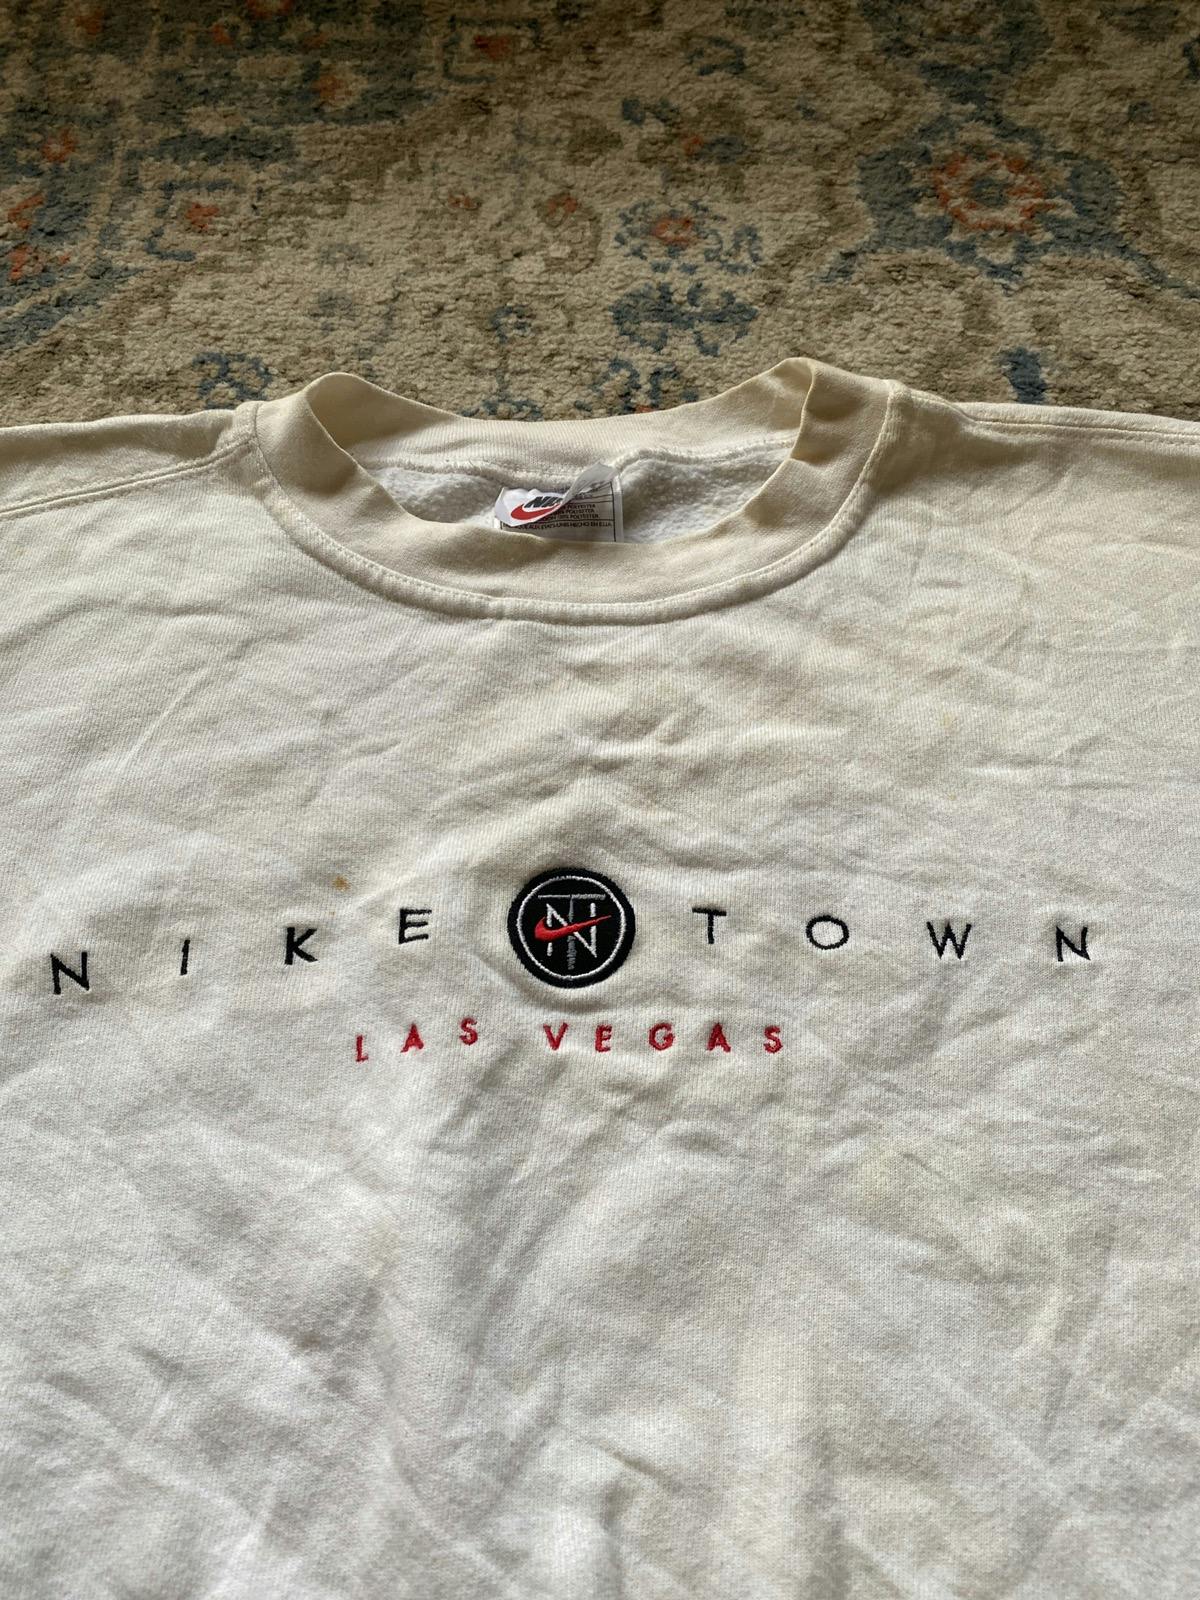 90’s Vintage Nike Town Los Angeles Crewneck Sweatshirt - 2